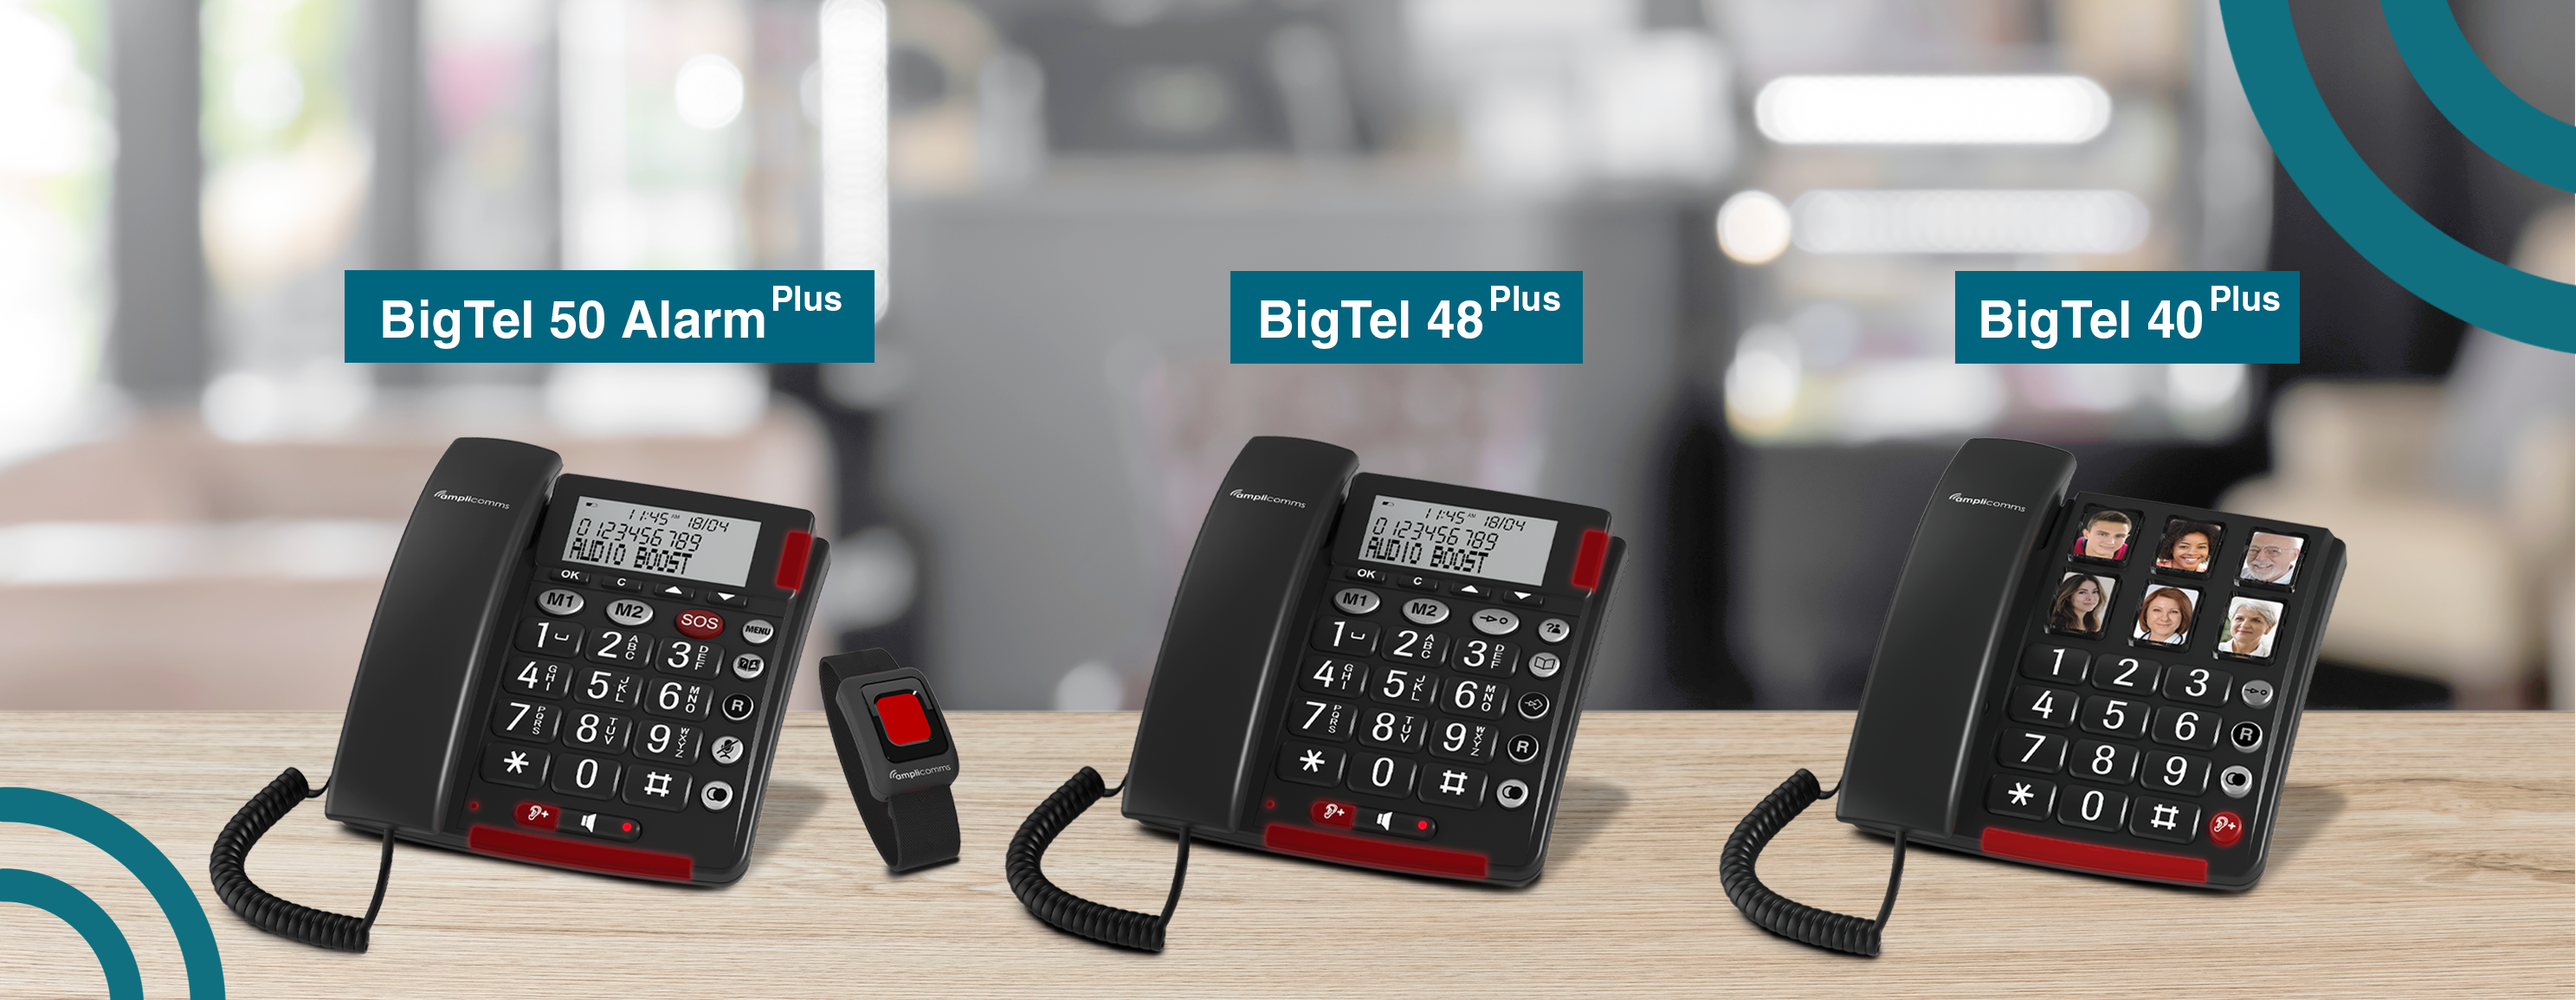 Amplicomms - Amplicomms Bigtel 40 plus - Téléphone fixe senior